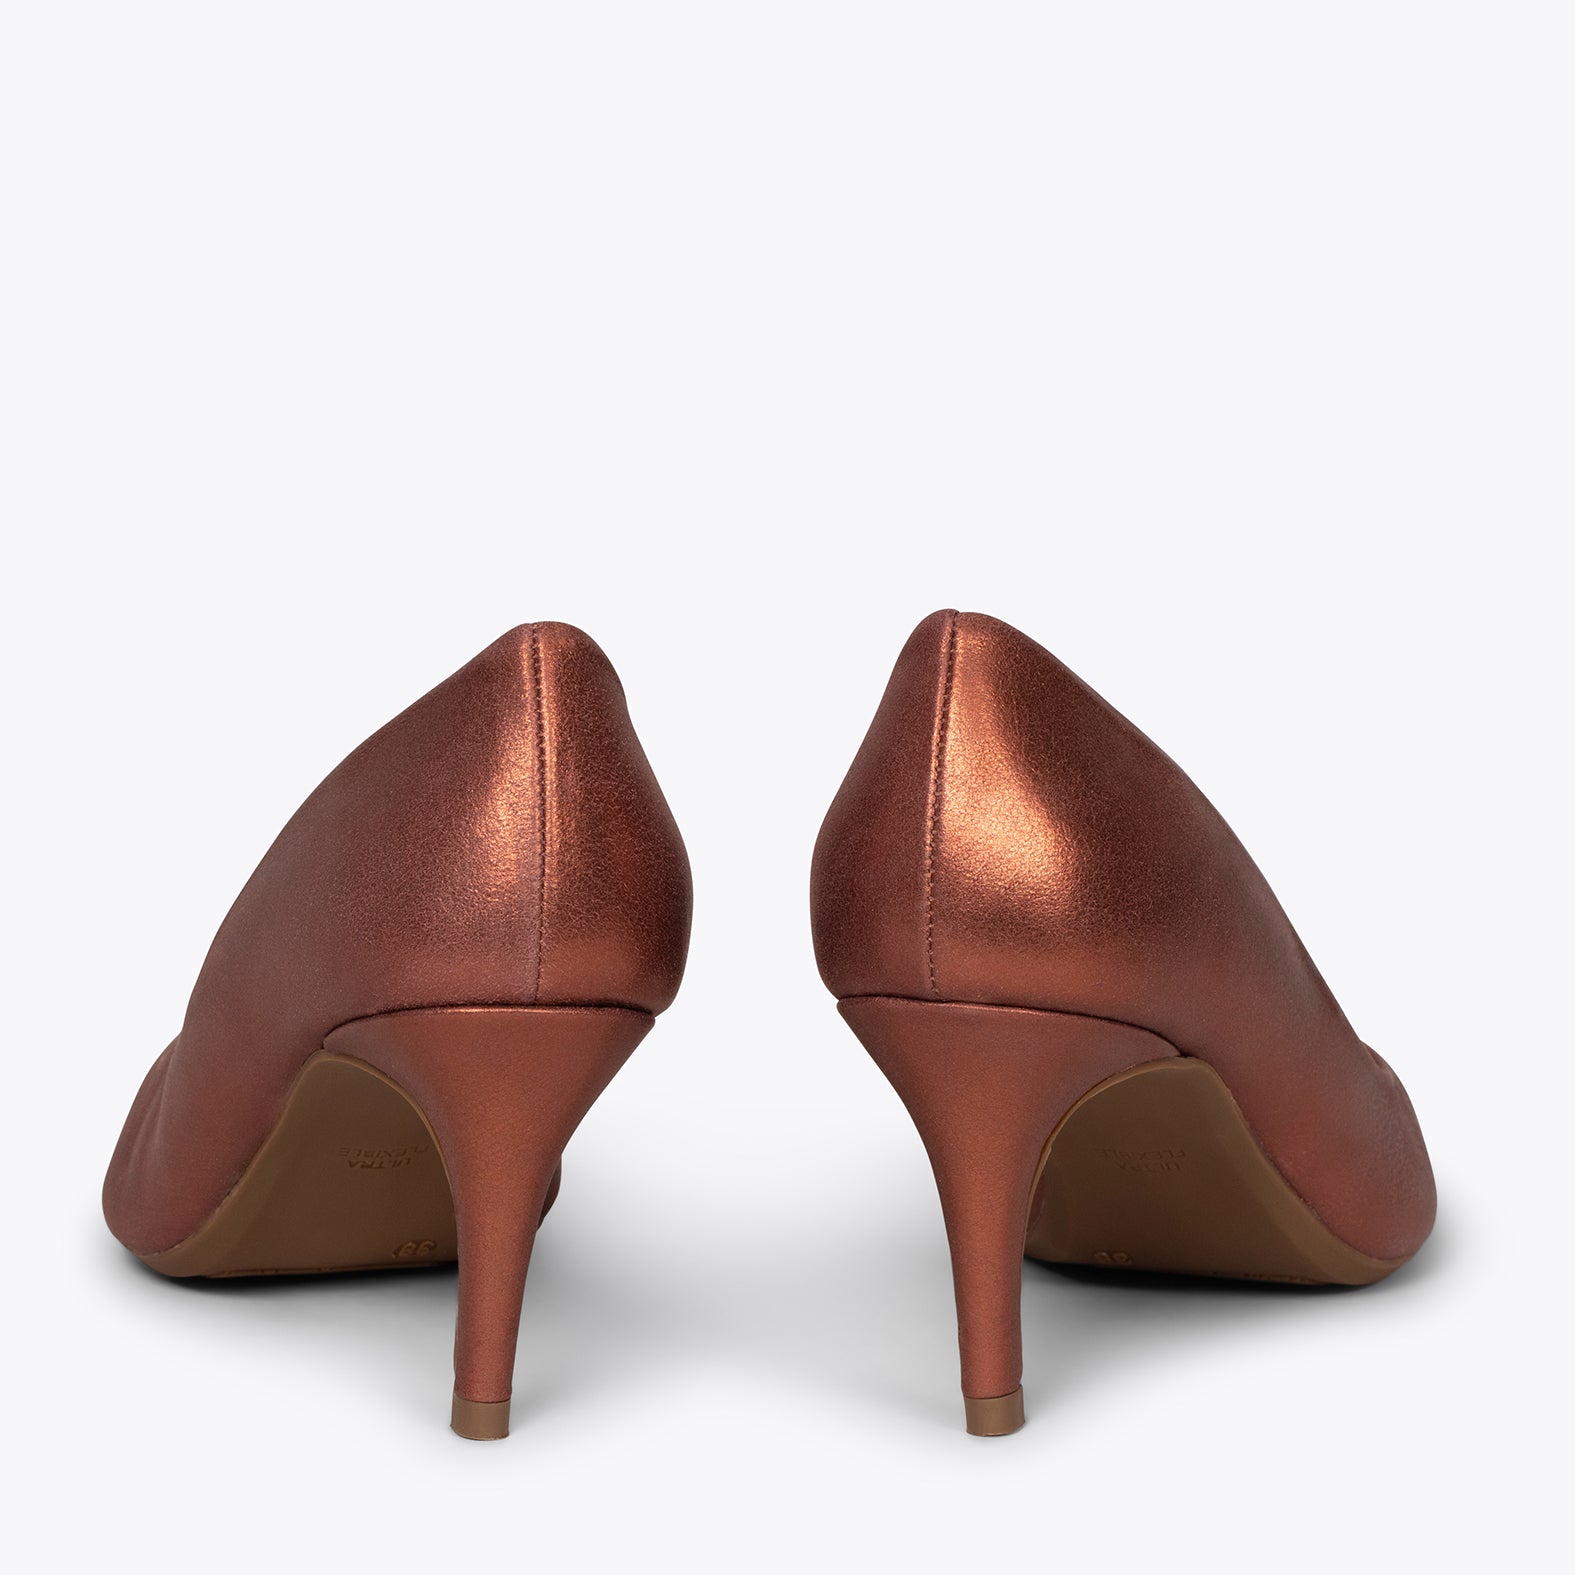 STILETTO – COPPER stiletto mid heel